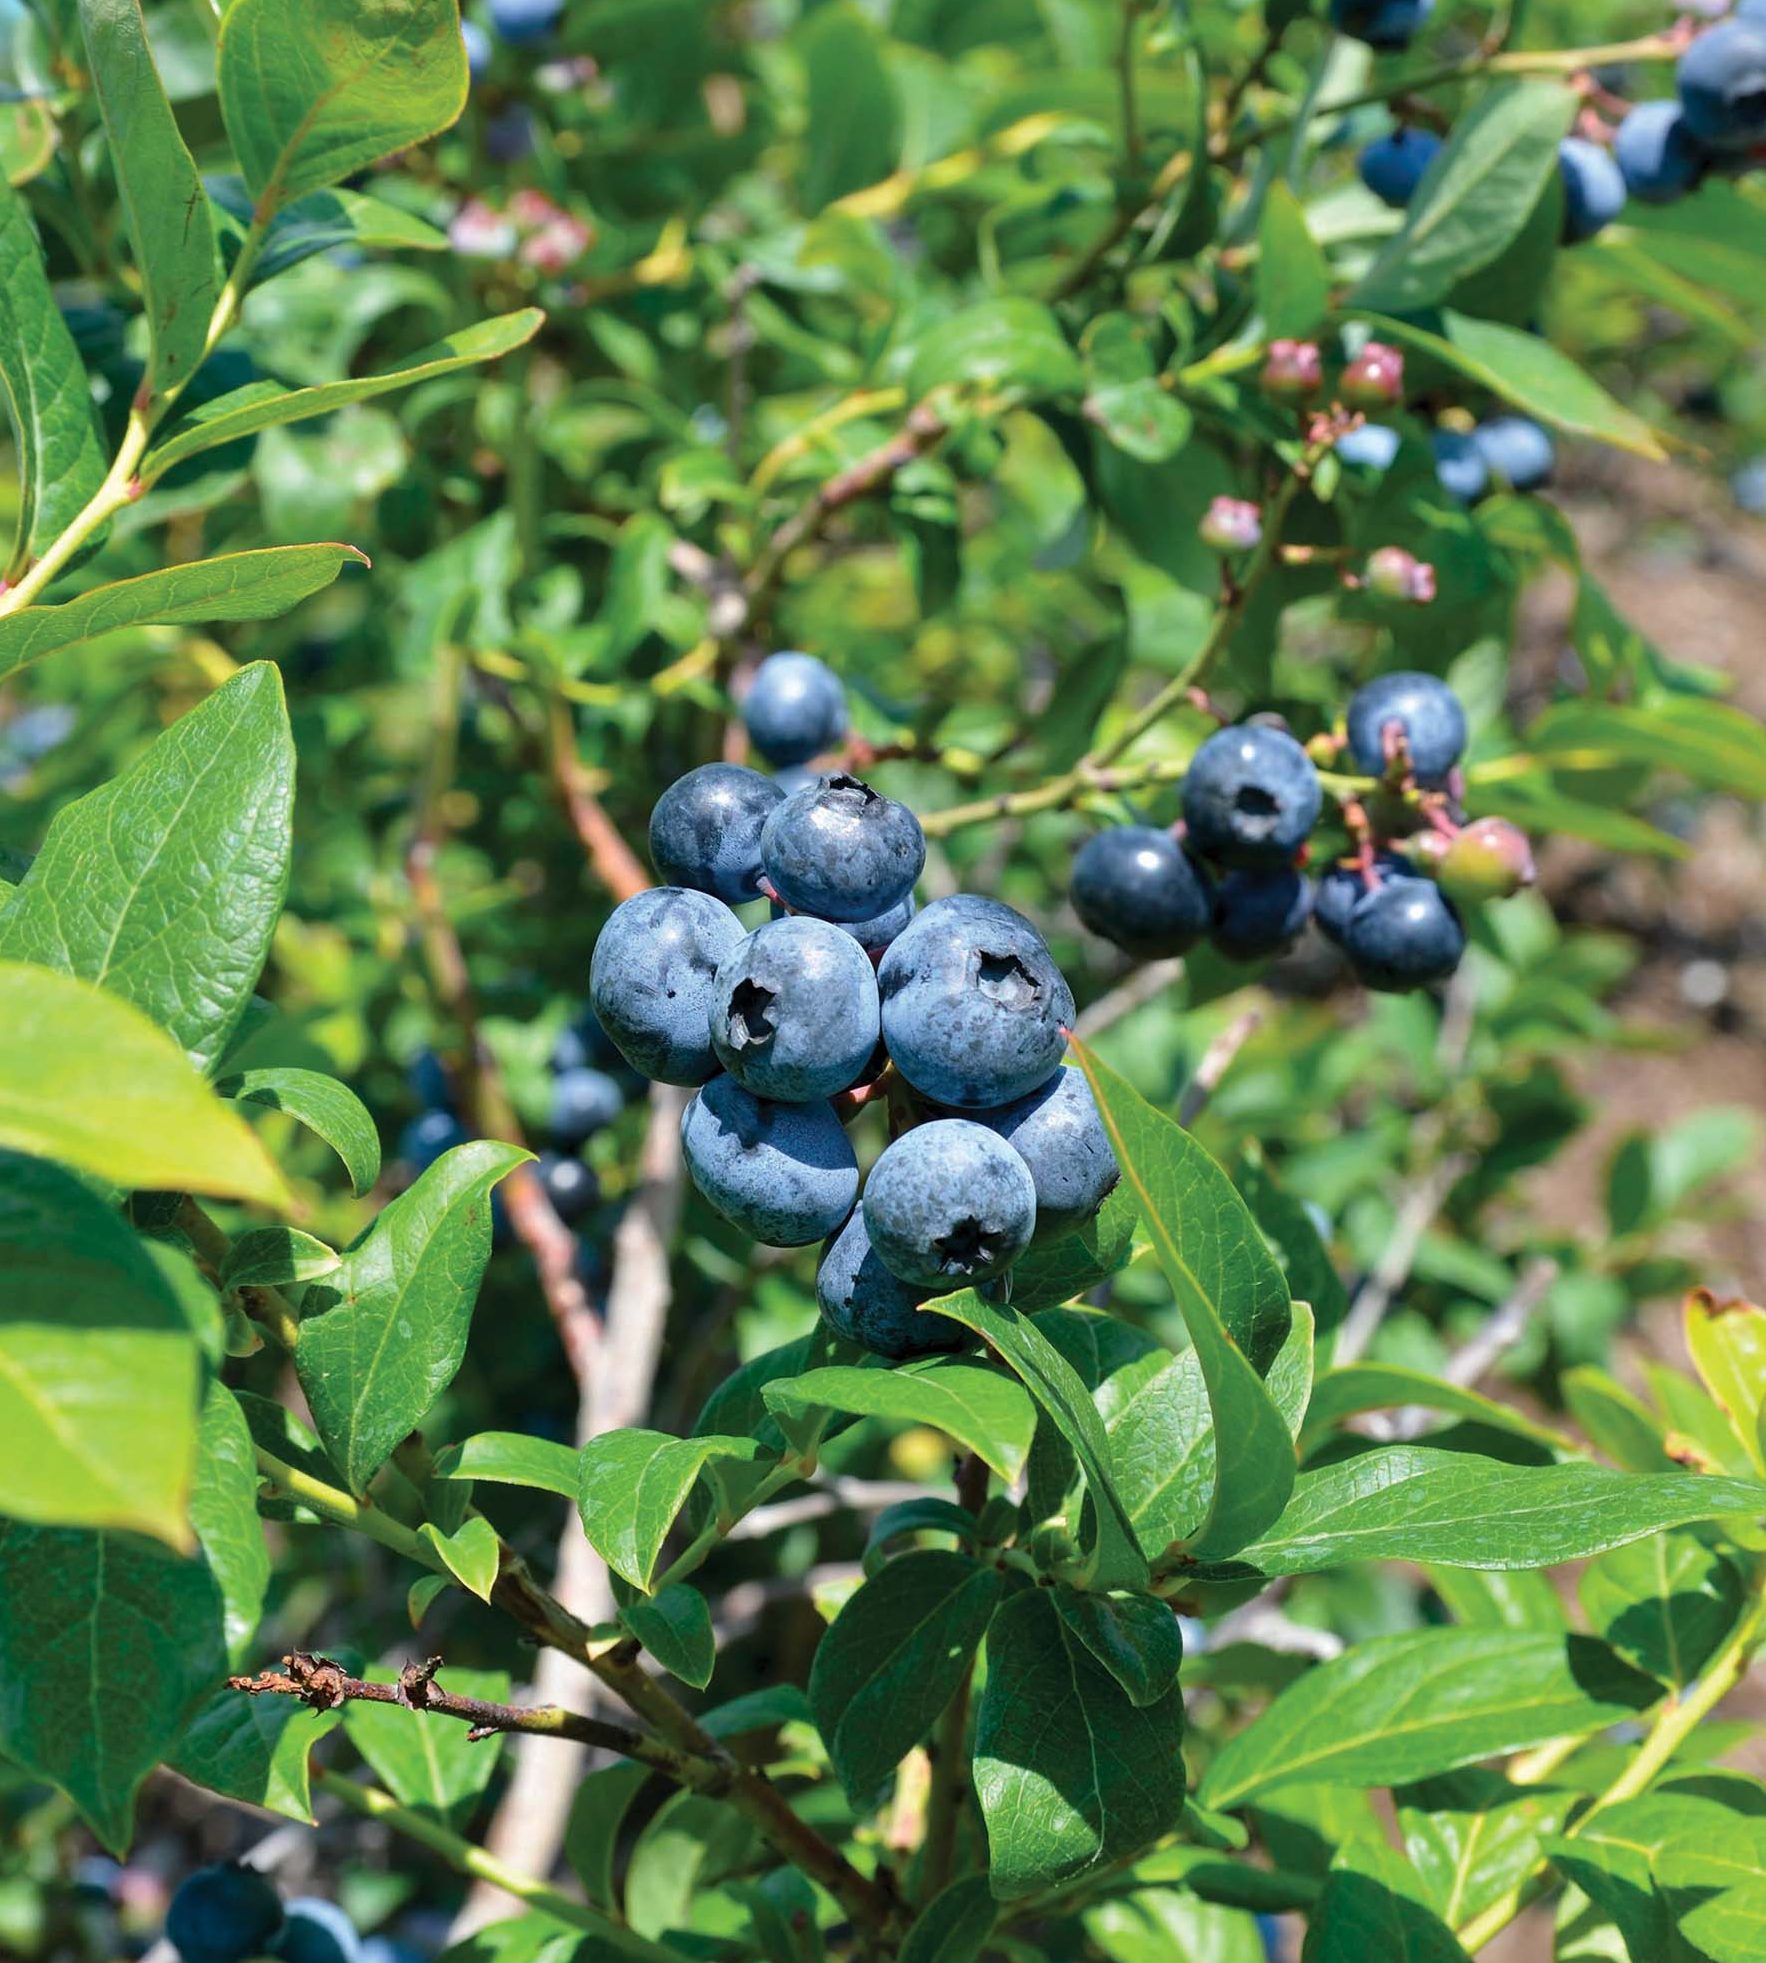 Southern Ohio farm grows bright blueberries next to green turf - Ohio ...